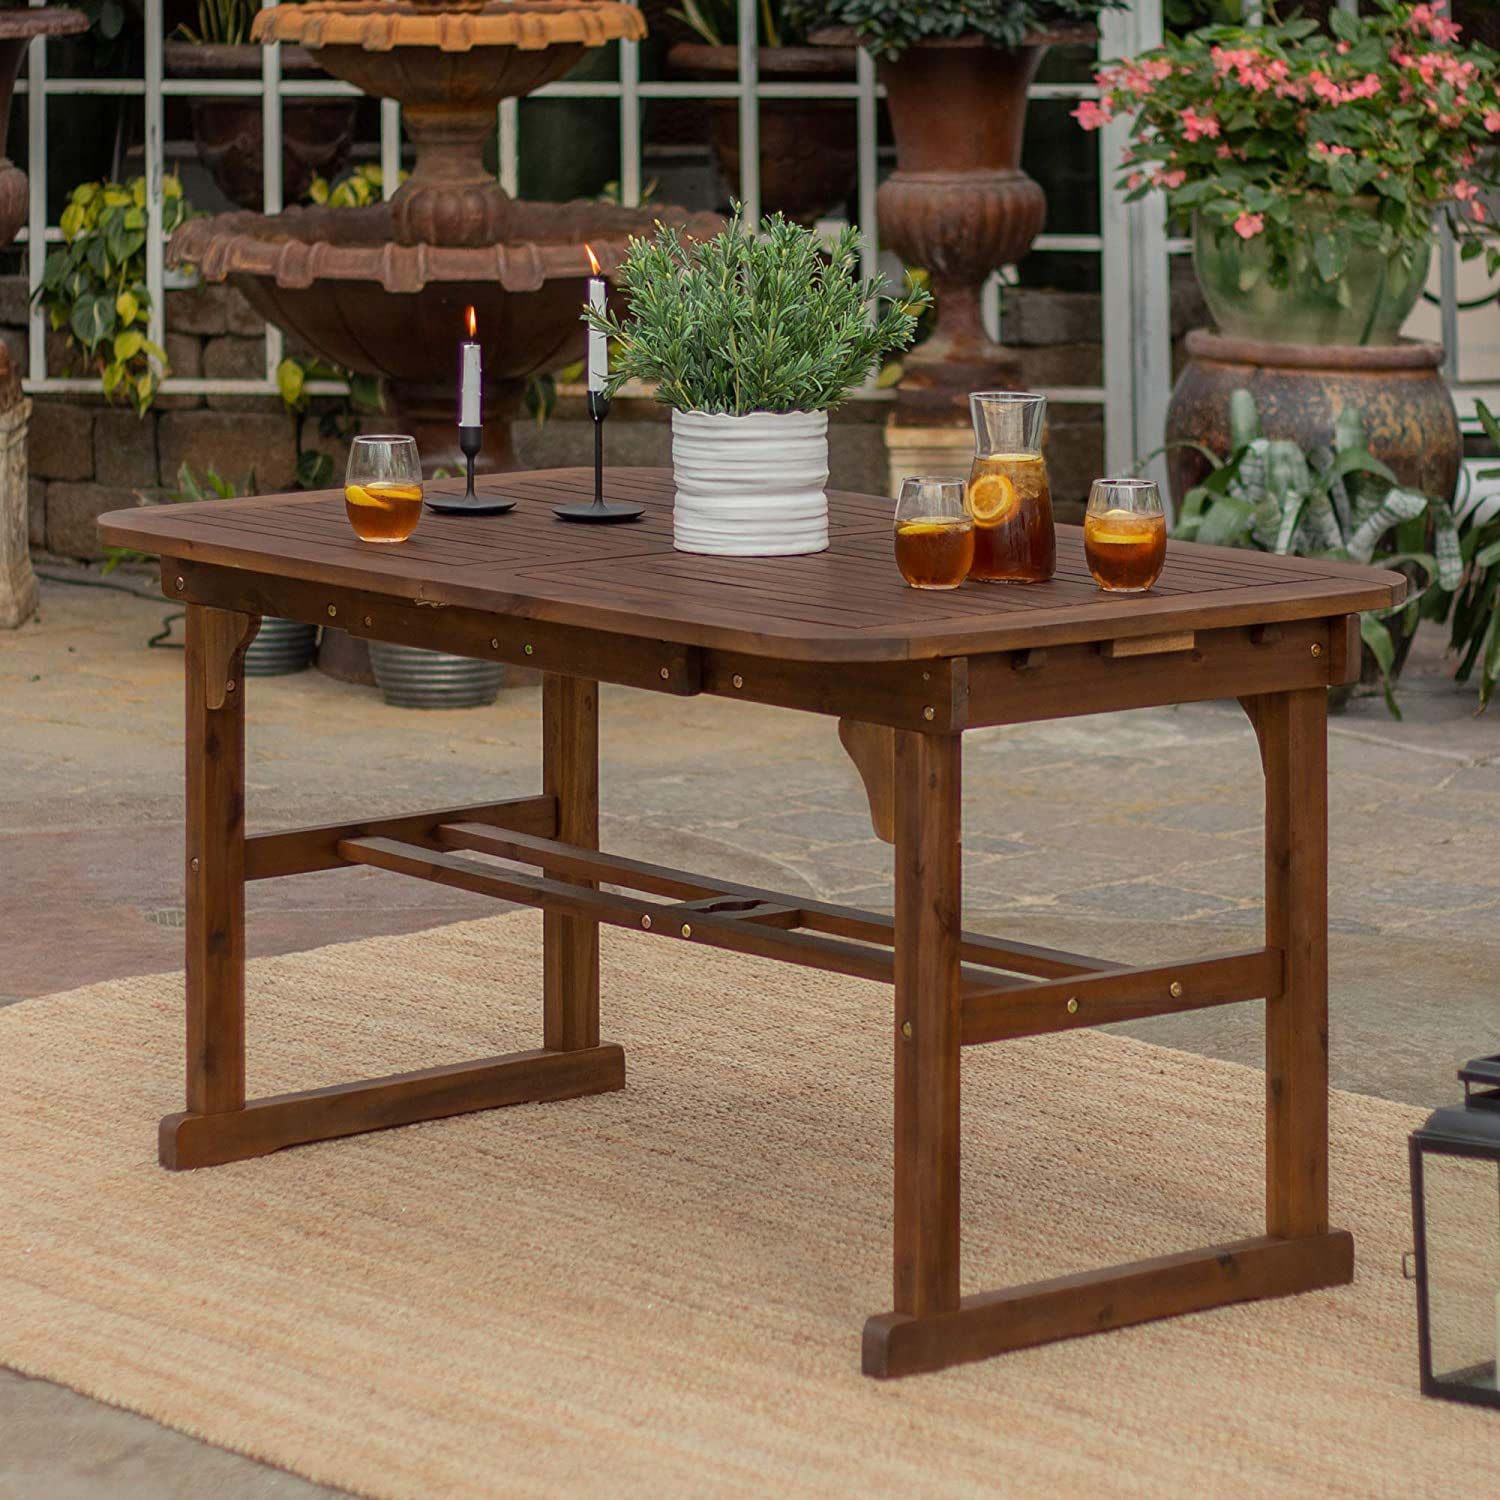 Овај прошириви трпезаријски сто на отвореном је савршене величине за окупљања у дворишту и на распродаји је